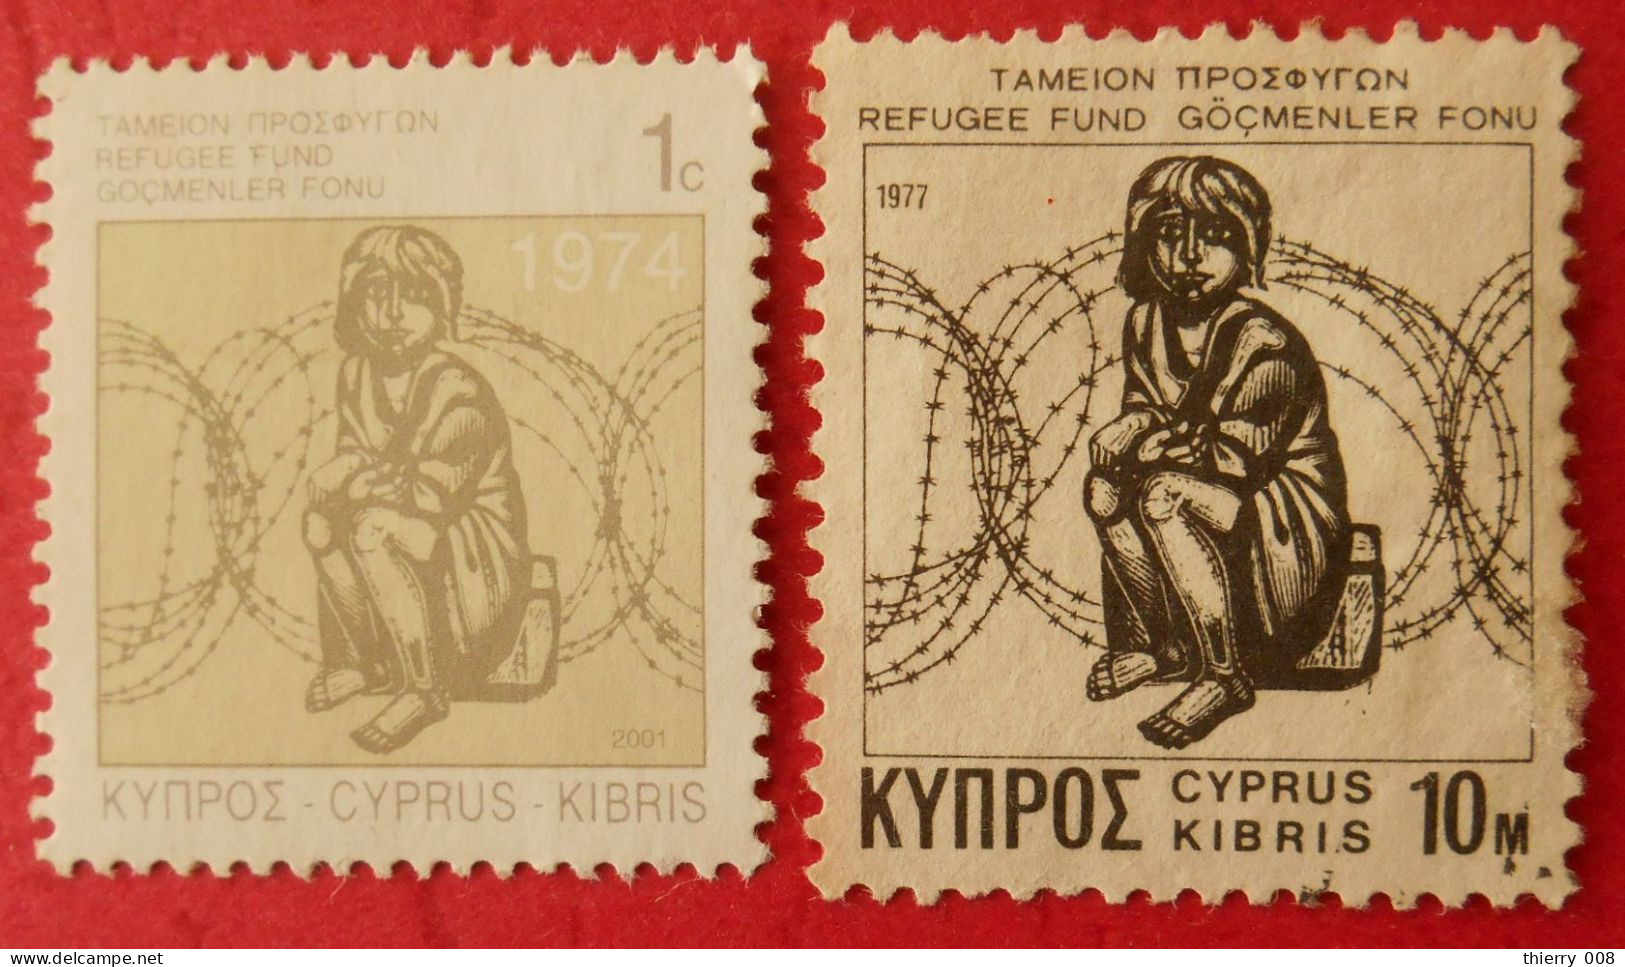 F94 Cyprus Kibris Chypre  Fond Pour Les Réfugiés - Réfugiés